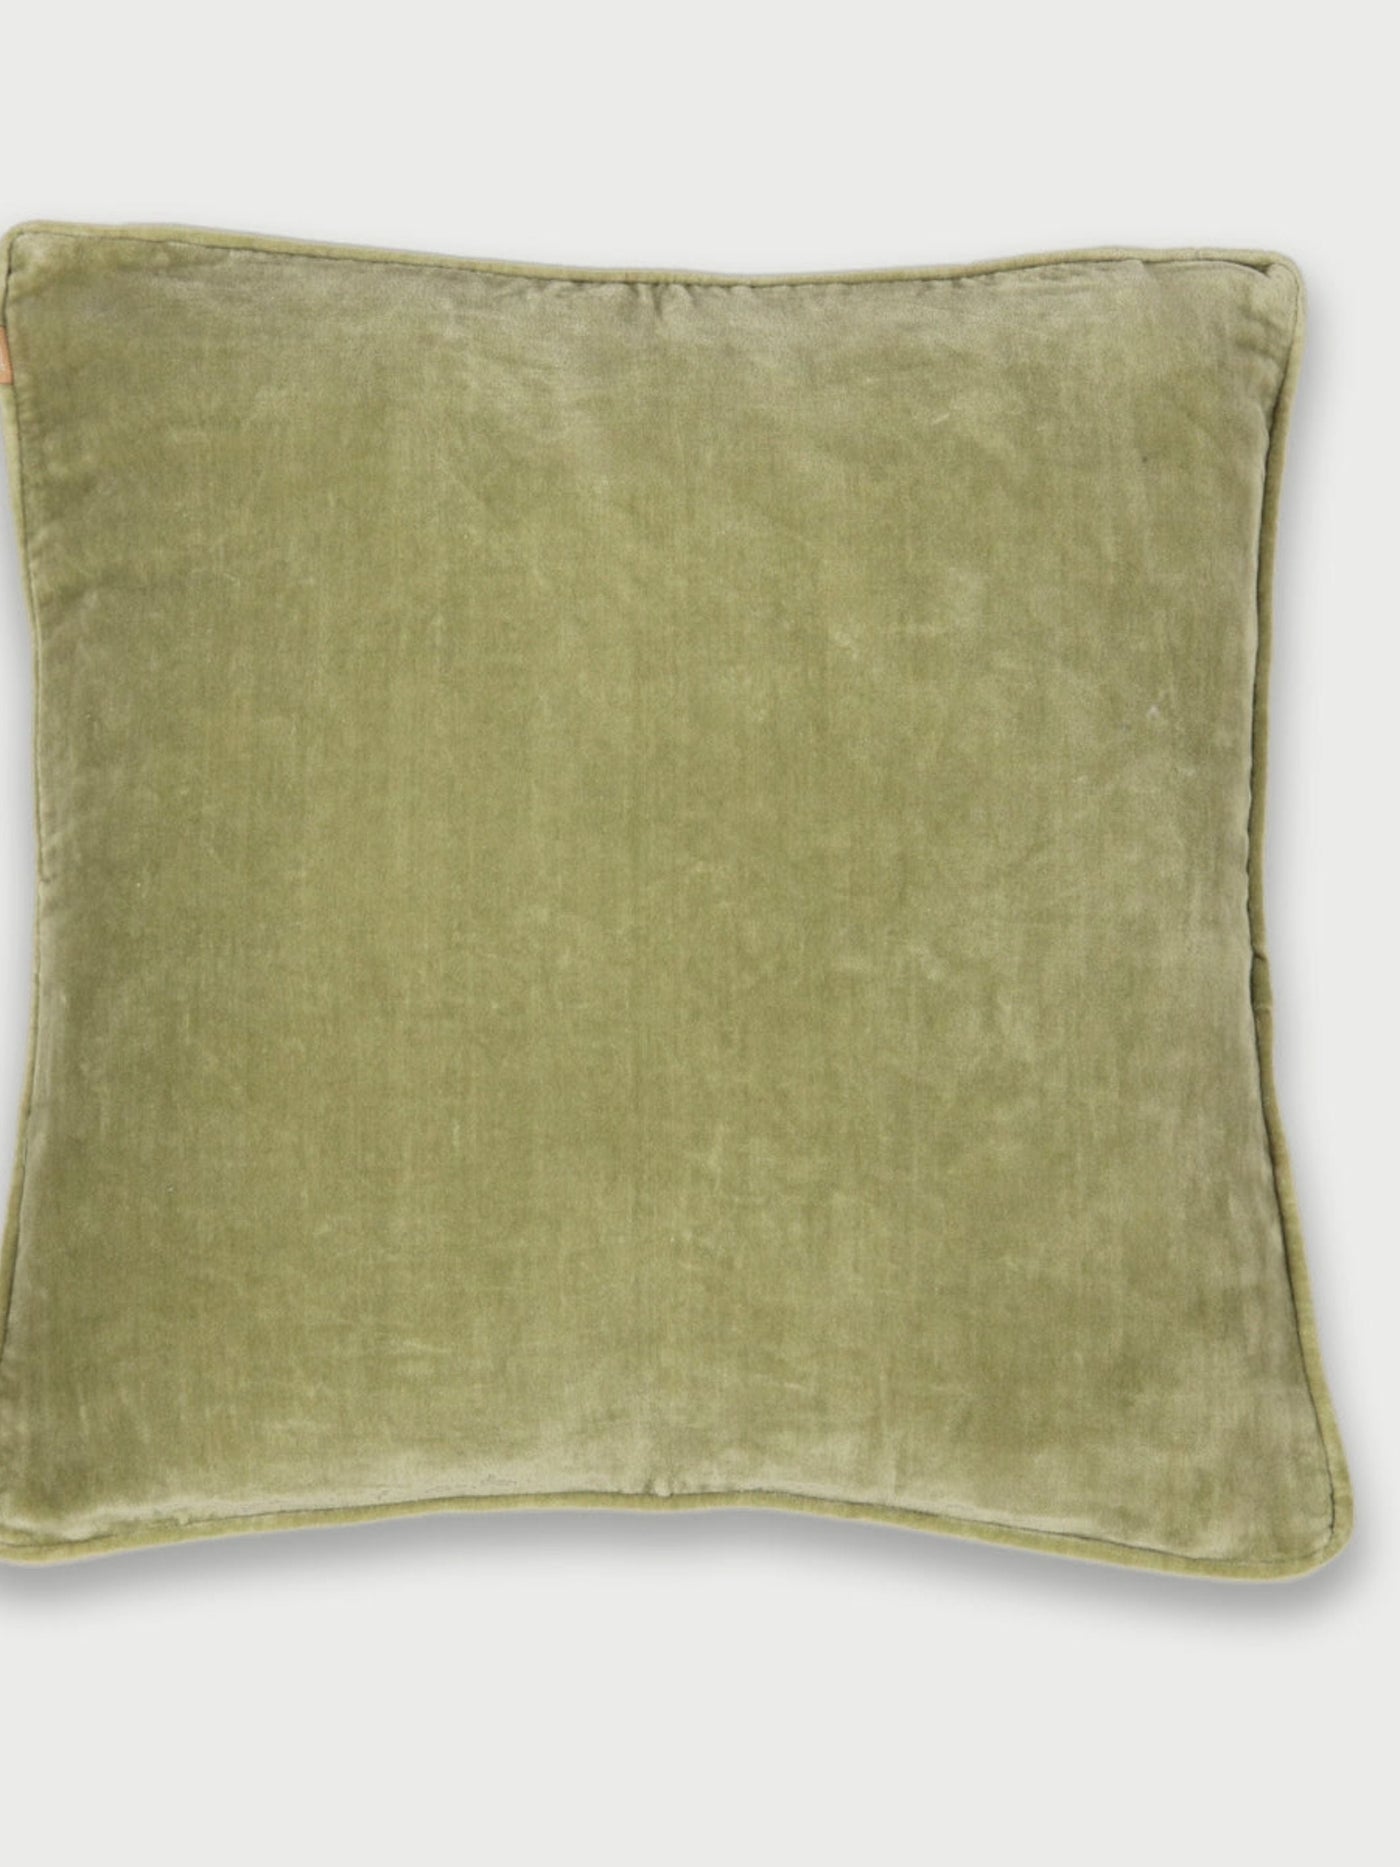 Cushion Cover - Moss Green Velvet Euro Sham